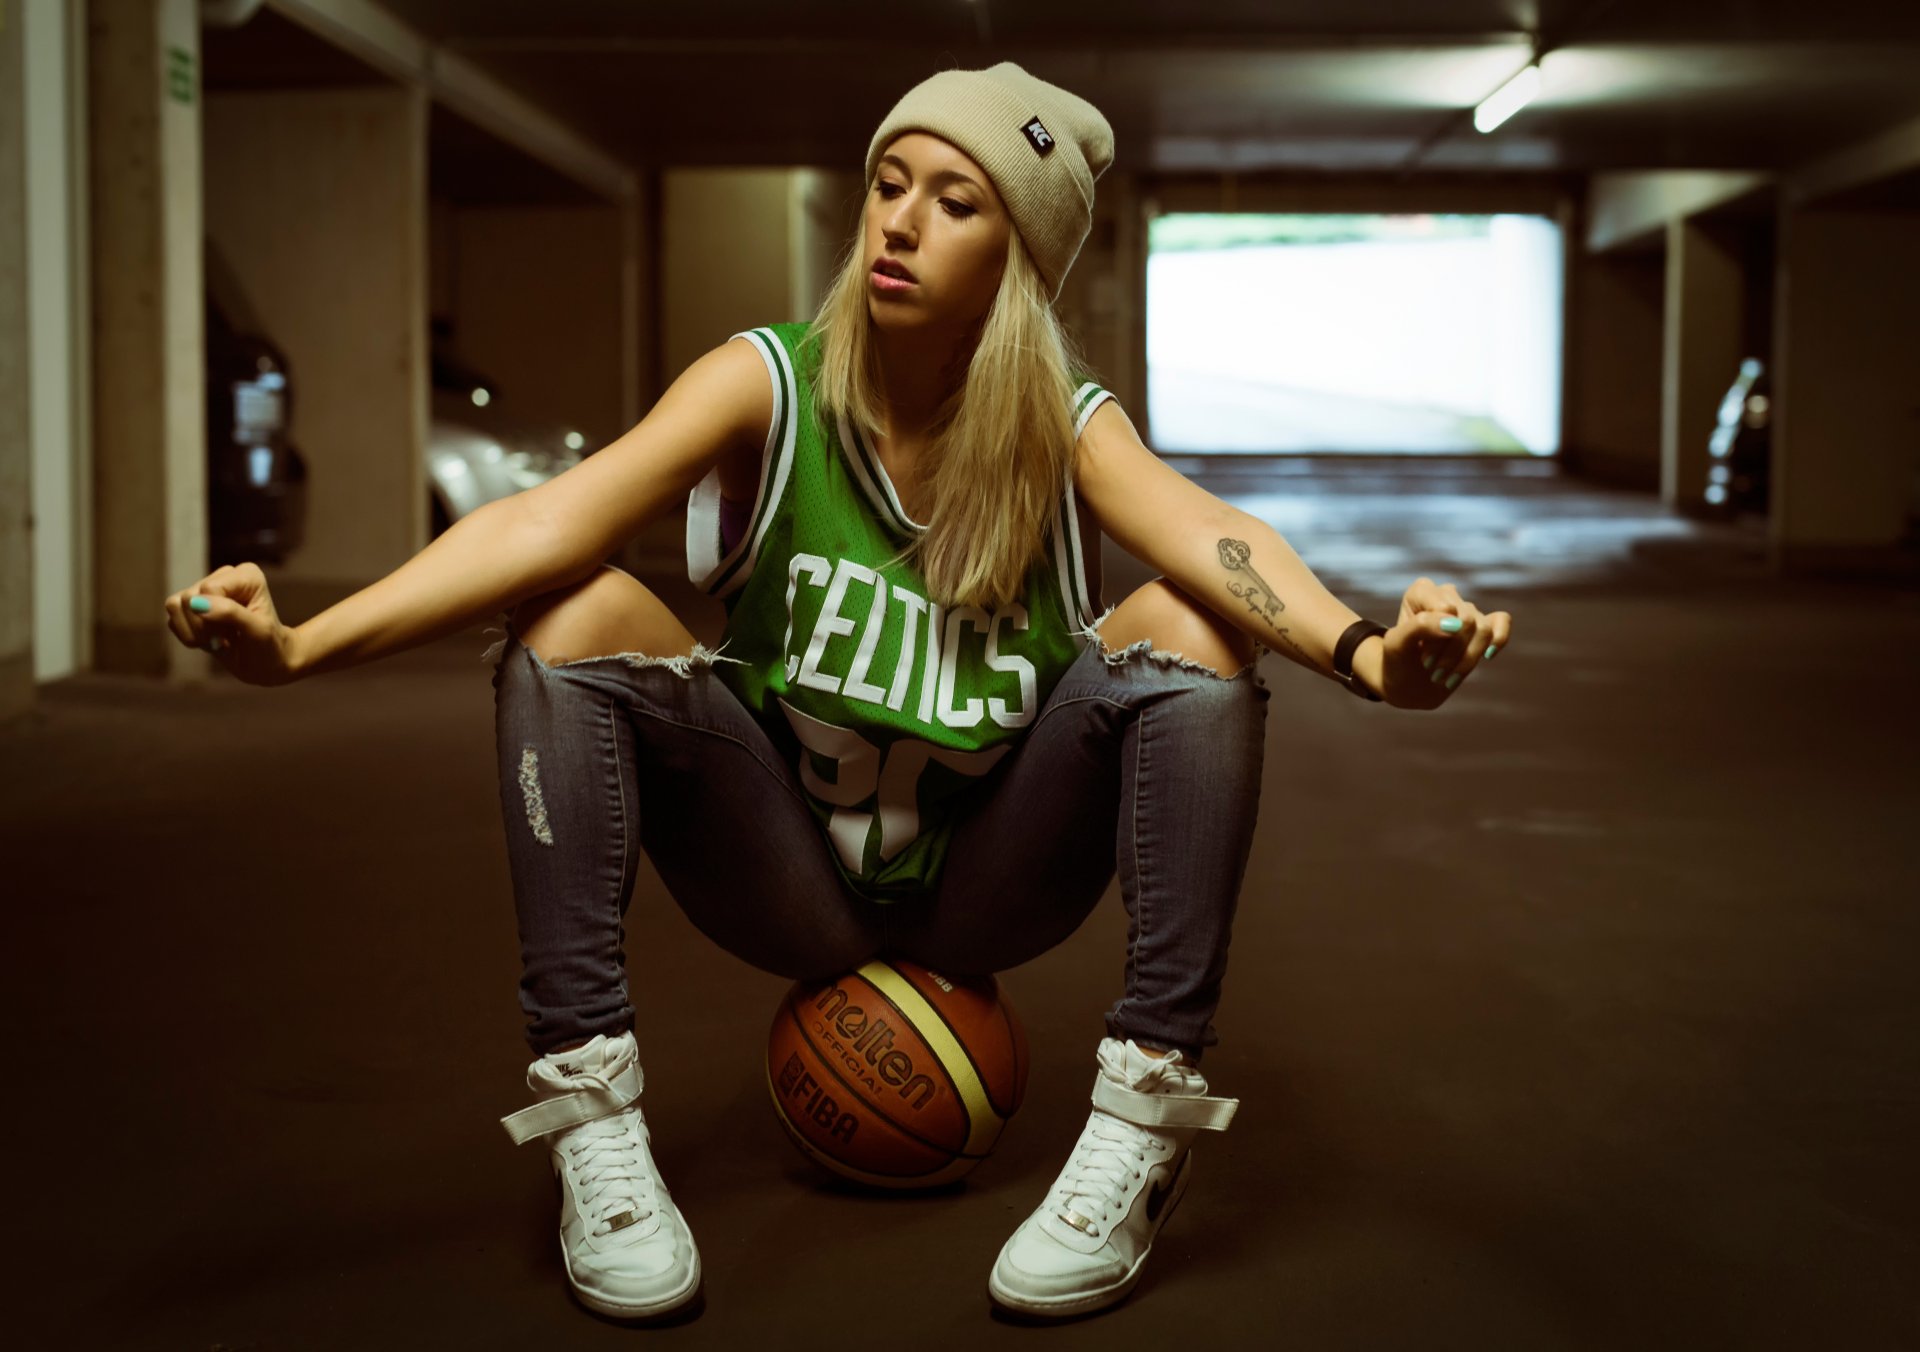 バスケットボールは私のガールフレンドの壁紙です,バスケットボール,バスケットボール,バスケットボール選手,涼しい,プレーヤー